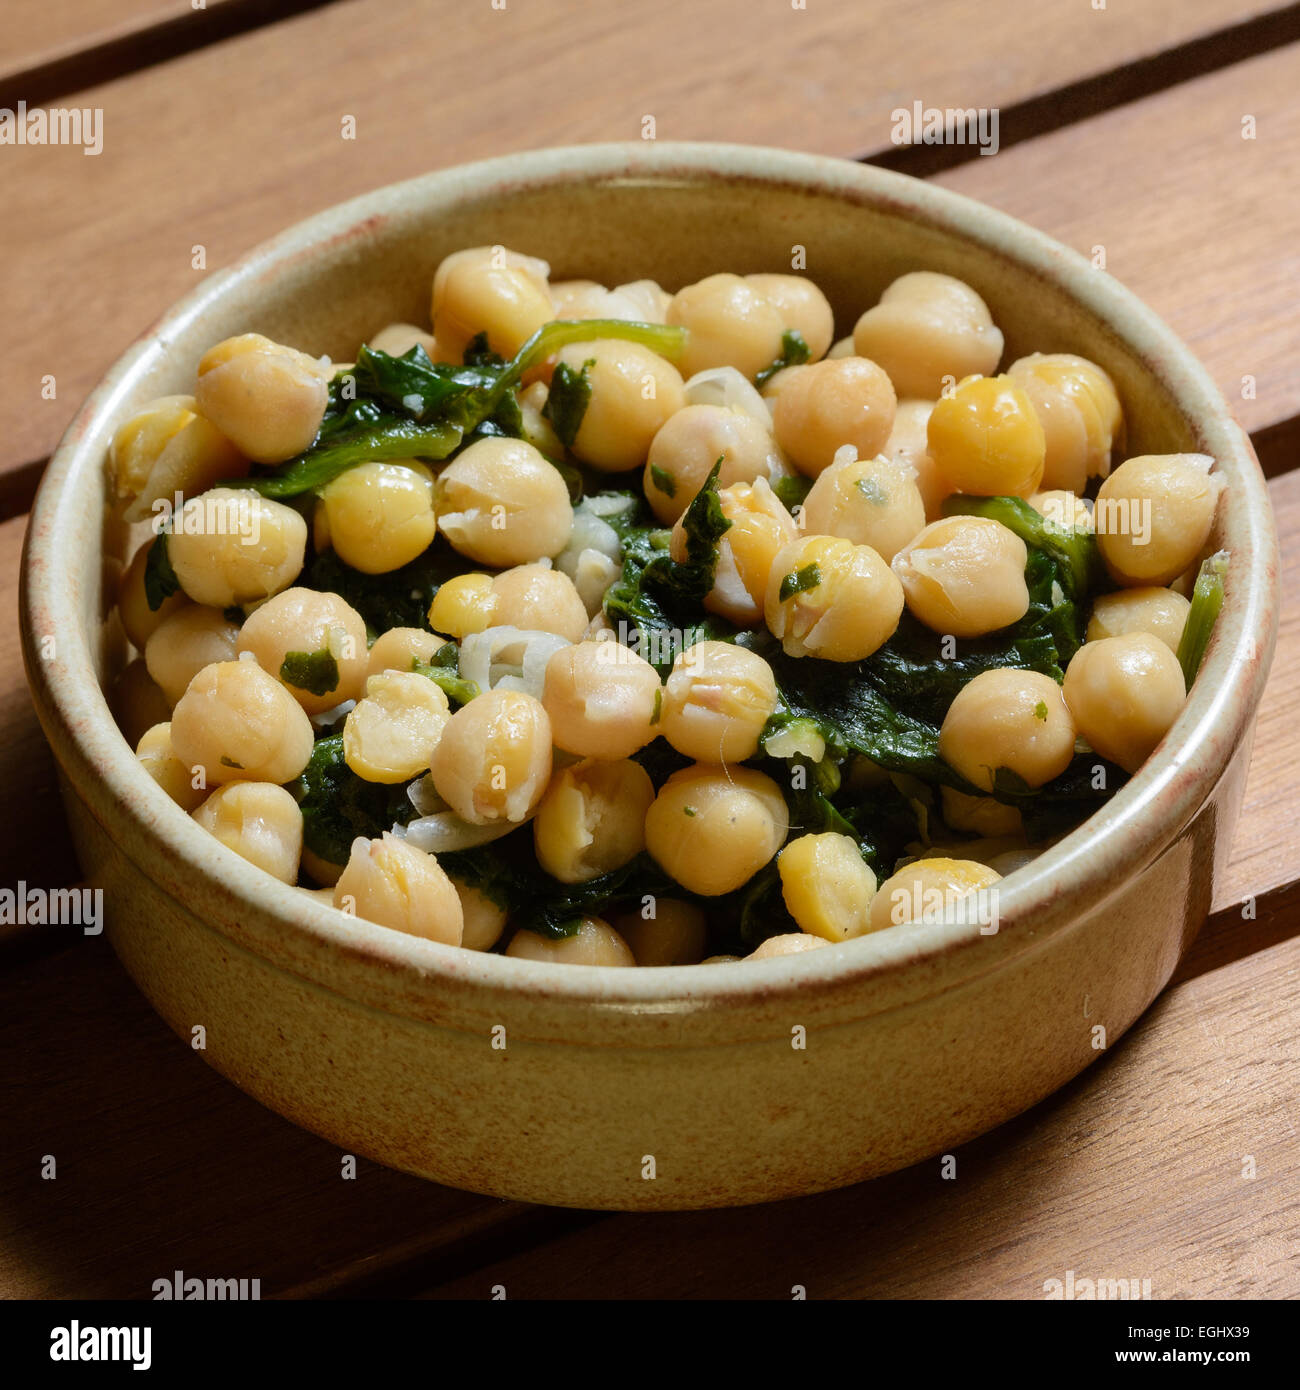 Des tapas. Les épinards et pois chiches cuits dans une sauce épicée, servi dans un bol en céramique marron sur une table en bois Banque D'Images